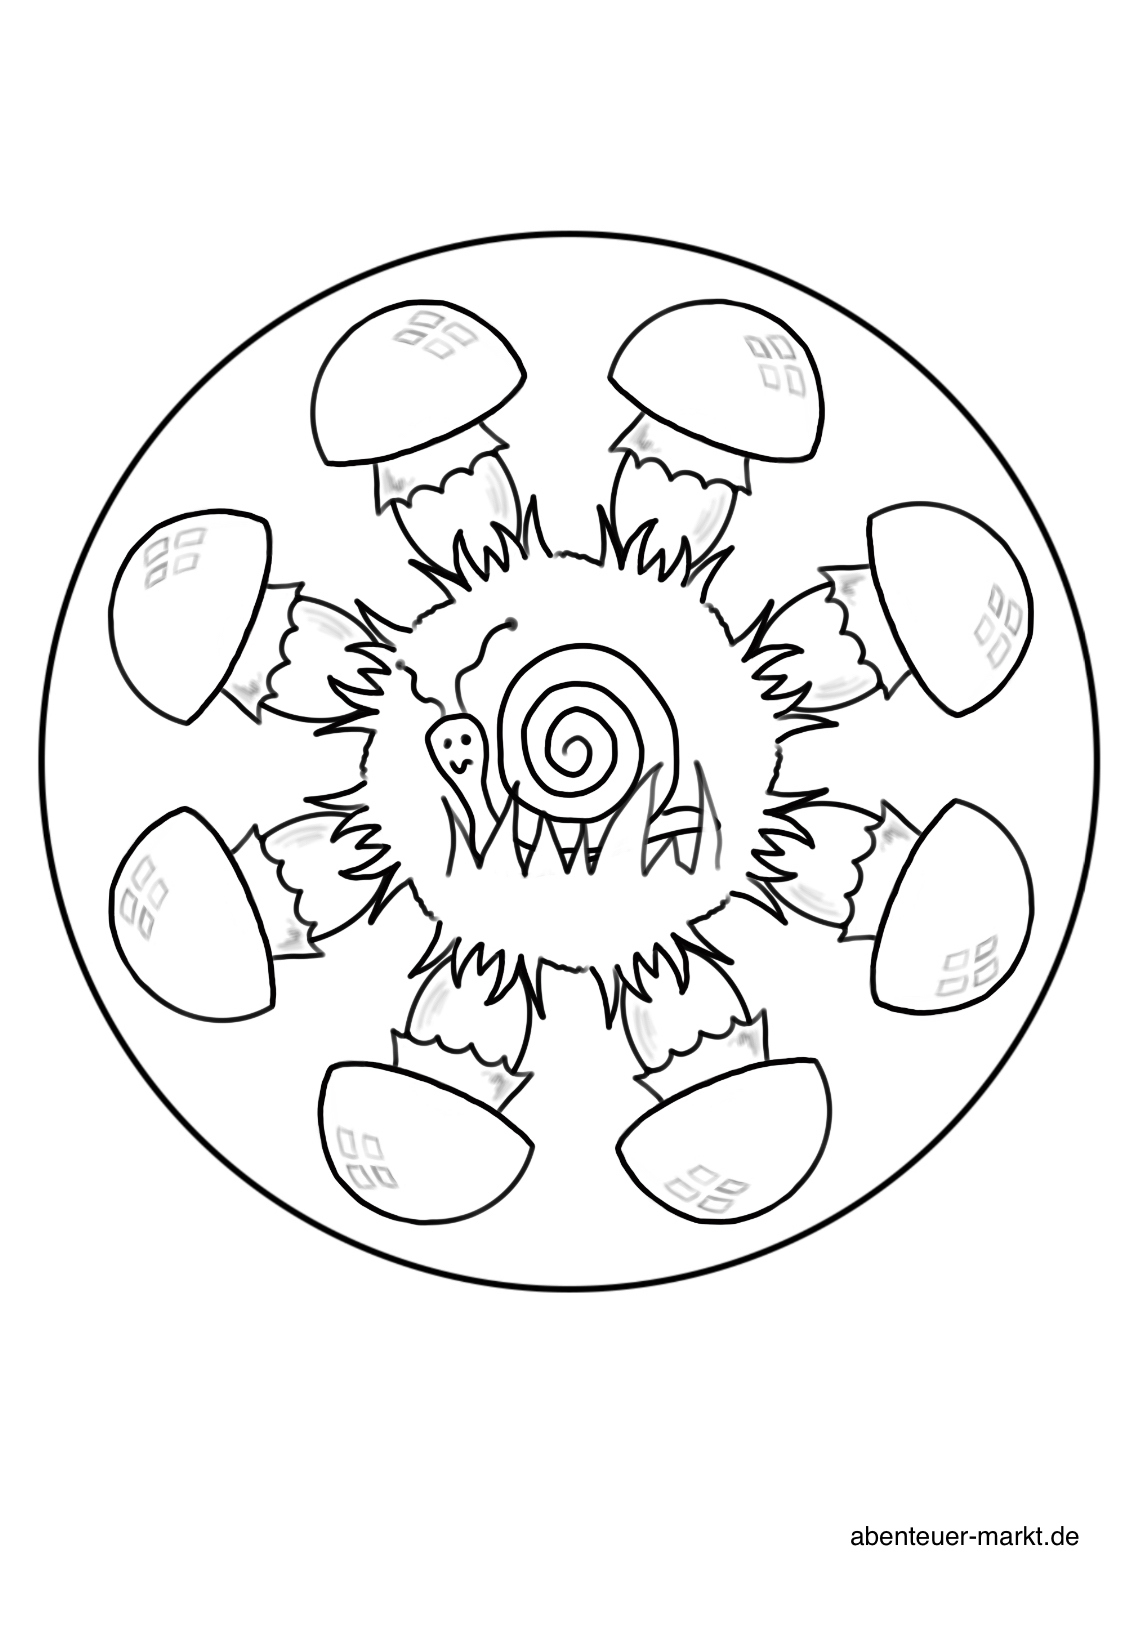 4. Bild zum Schritt 4 für das Bastel- und DIY-Abenteuer für Kinder: 'Sucht euch ein Bild, Mandala, Motiv aus. Druckt es euch...'